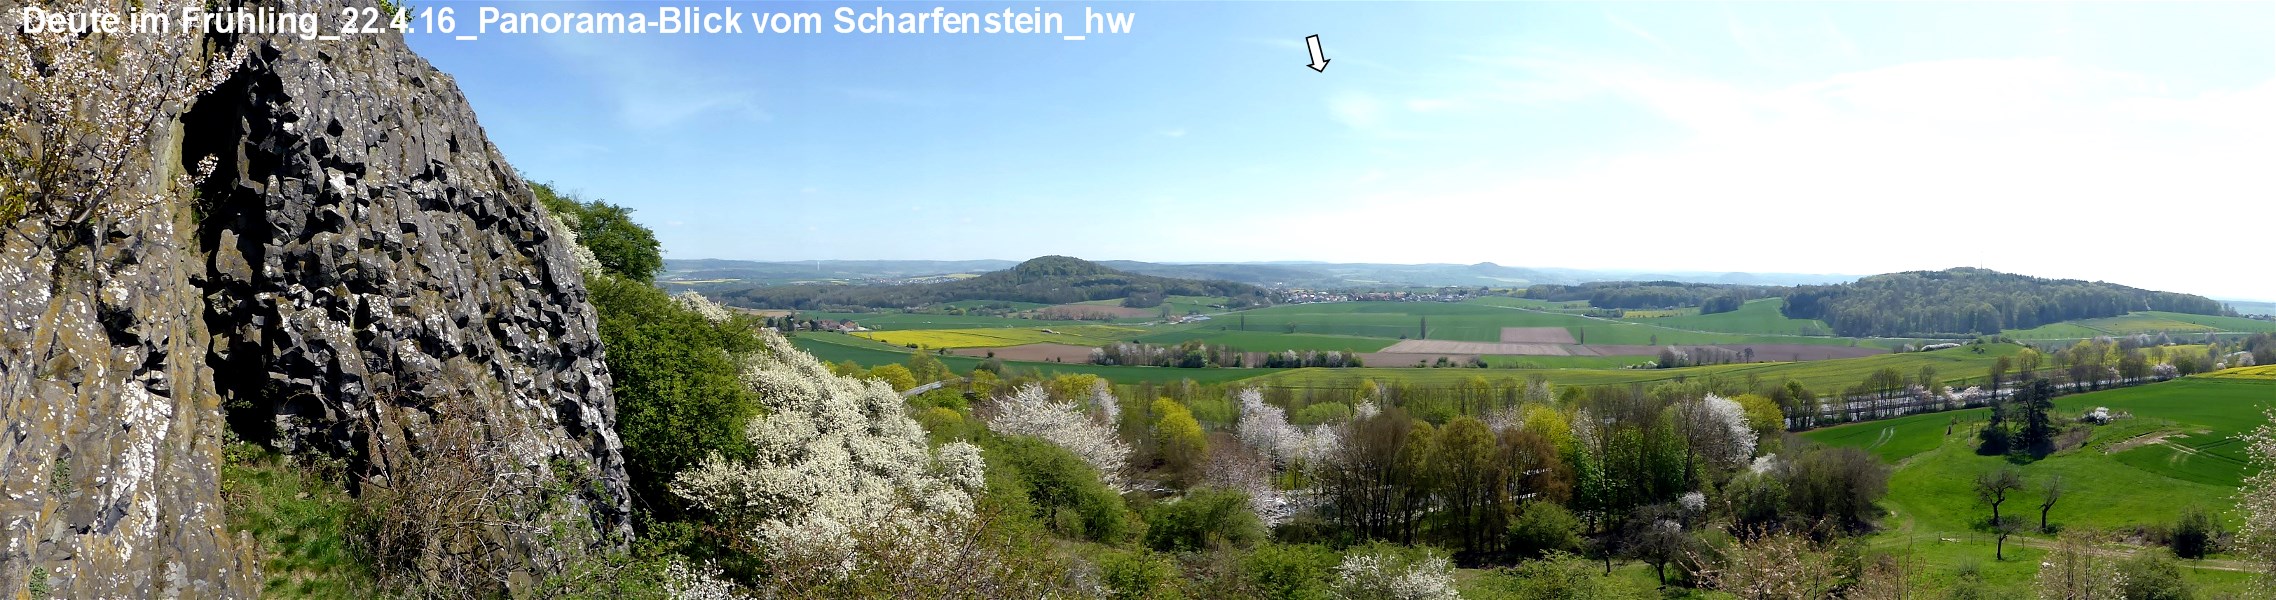 Web P1050005 Deute vom Scharfenstein Panorama 22.4.16